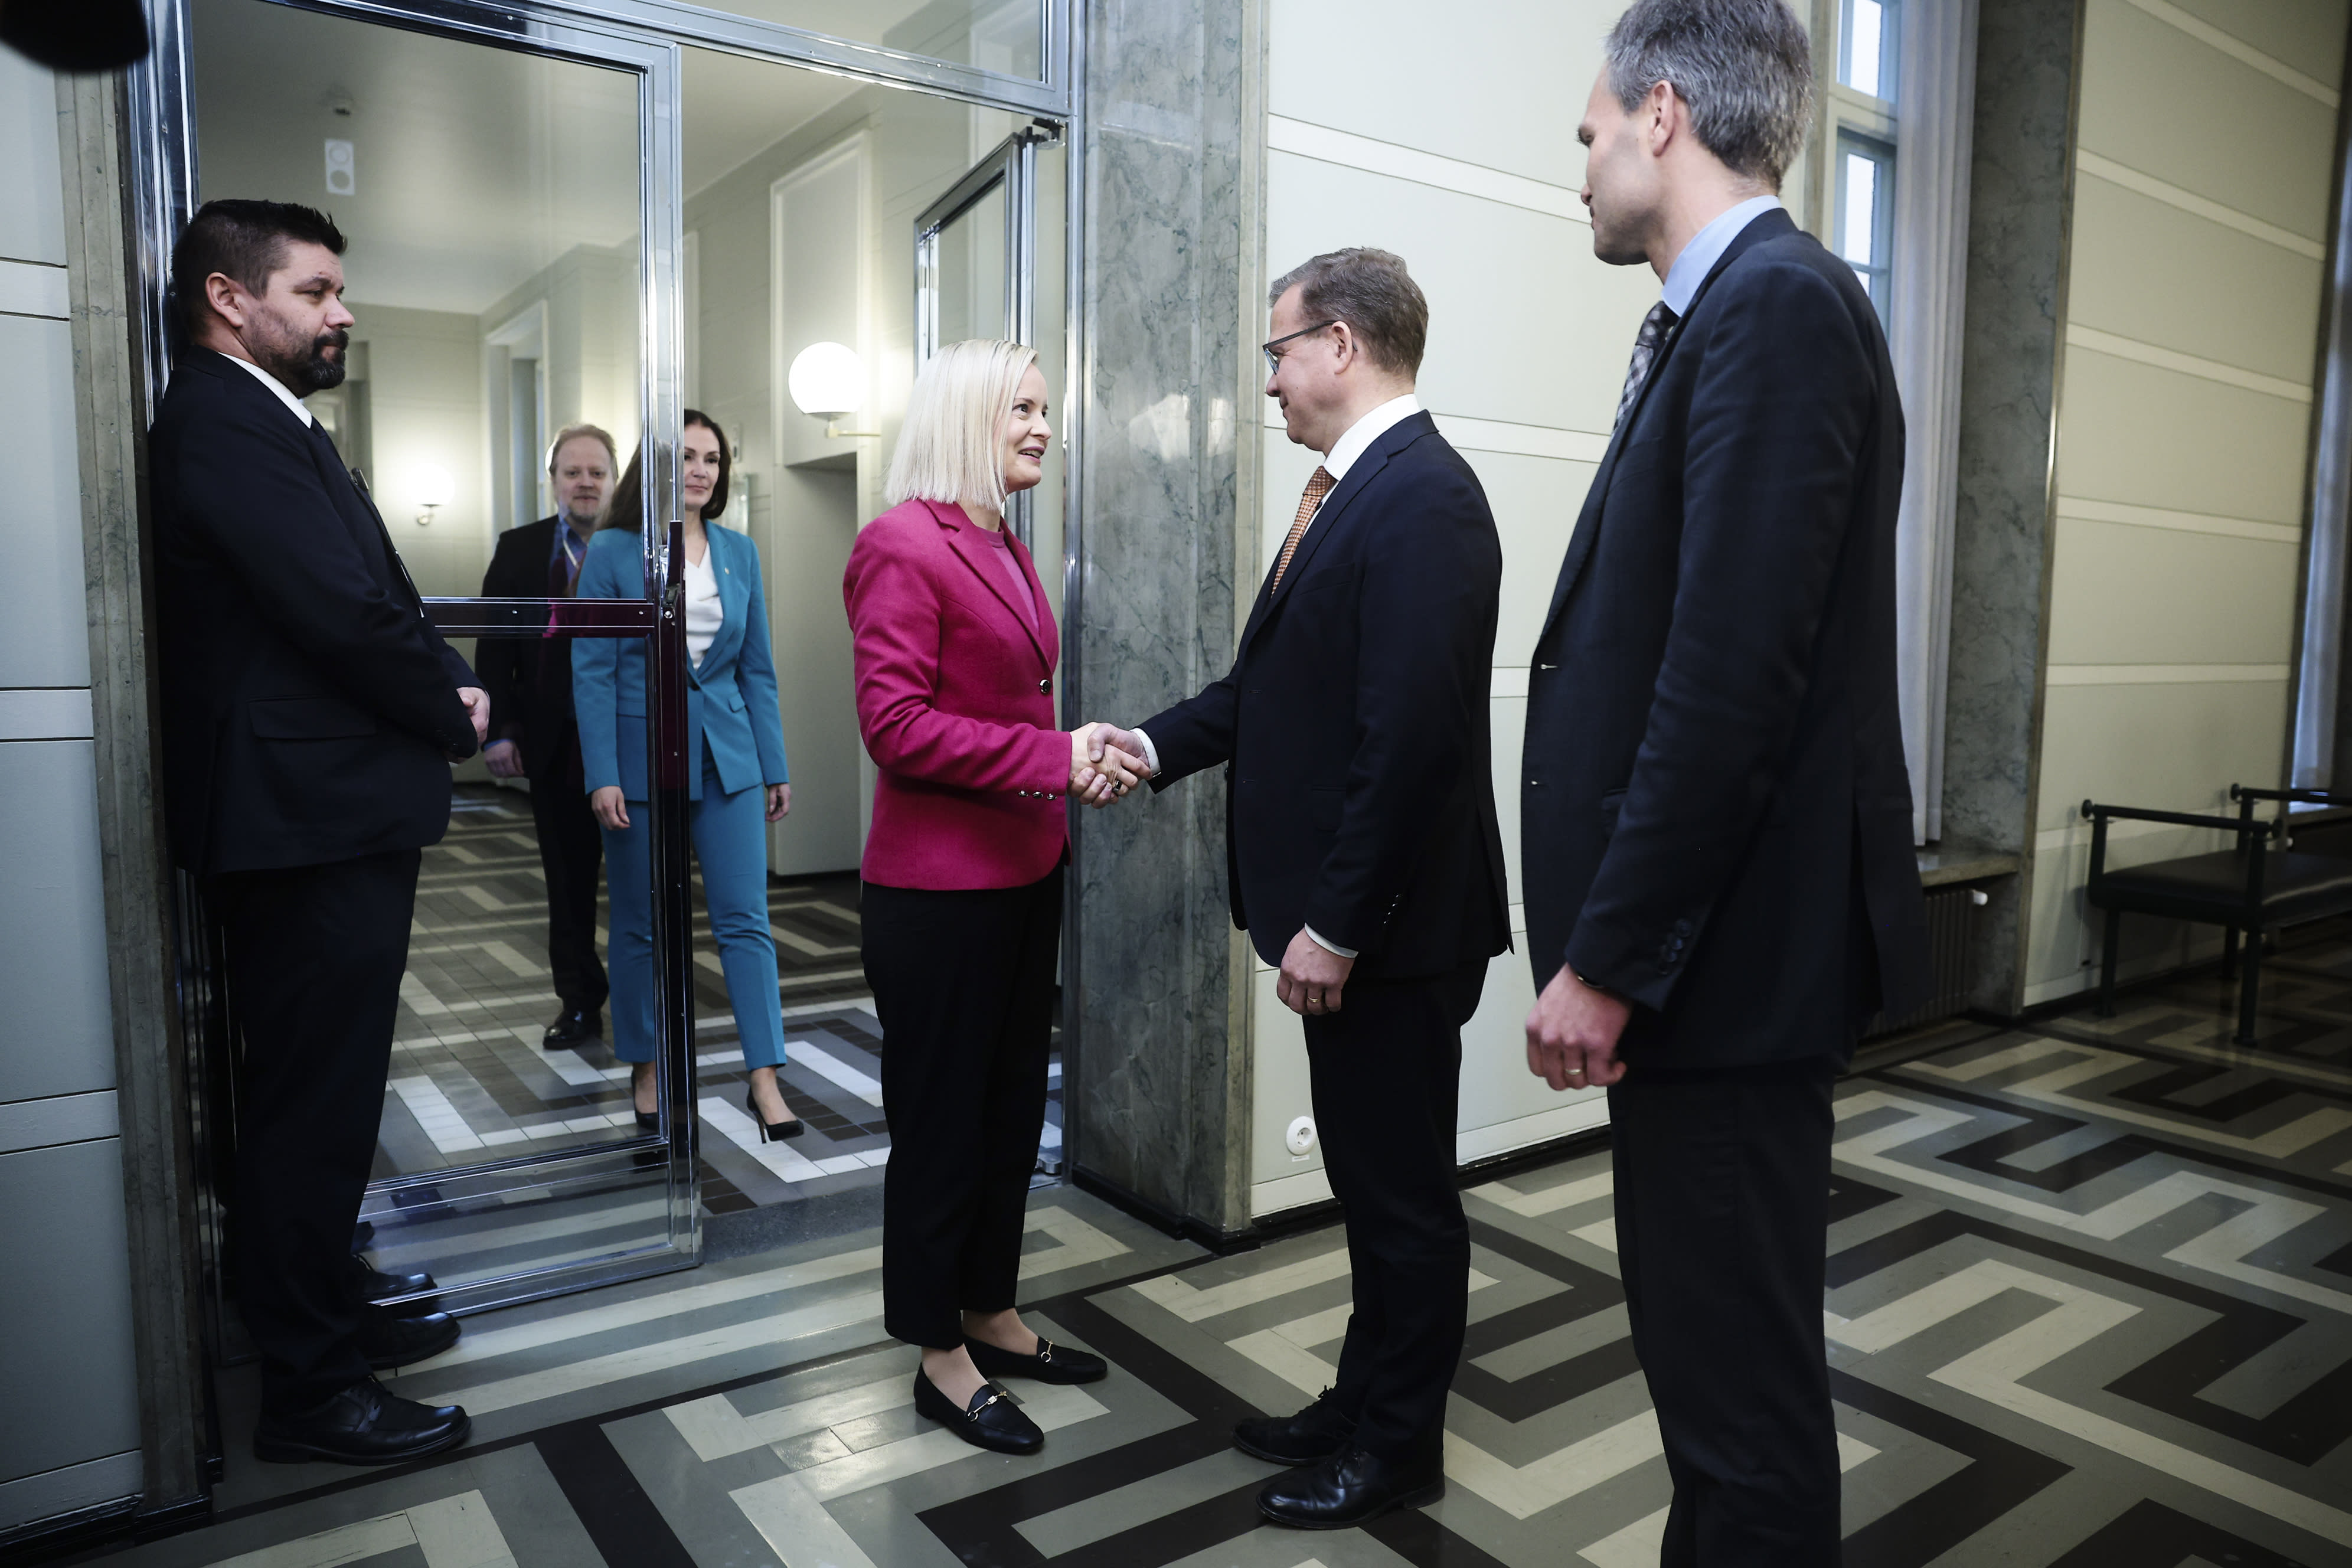 Riikka Purra: Основните финландци са готови за „трудни“ коалиционни преговори с NCP